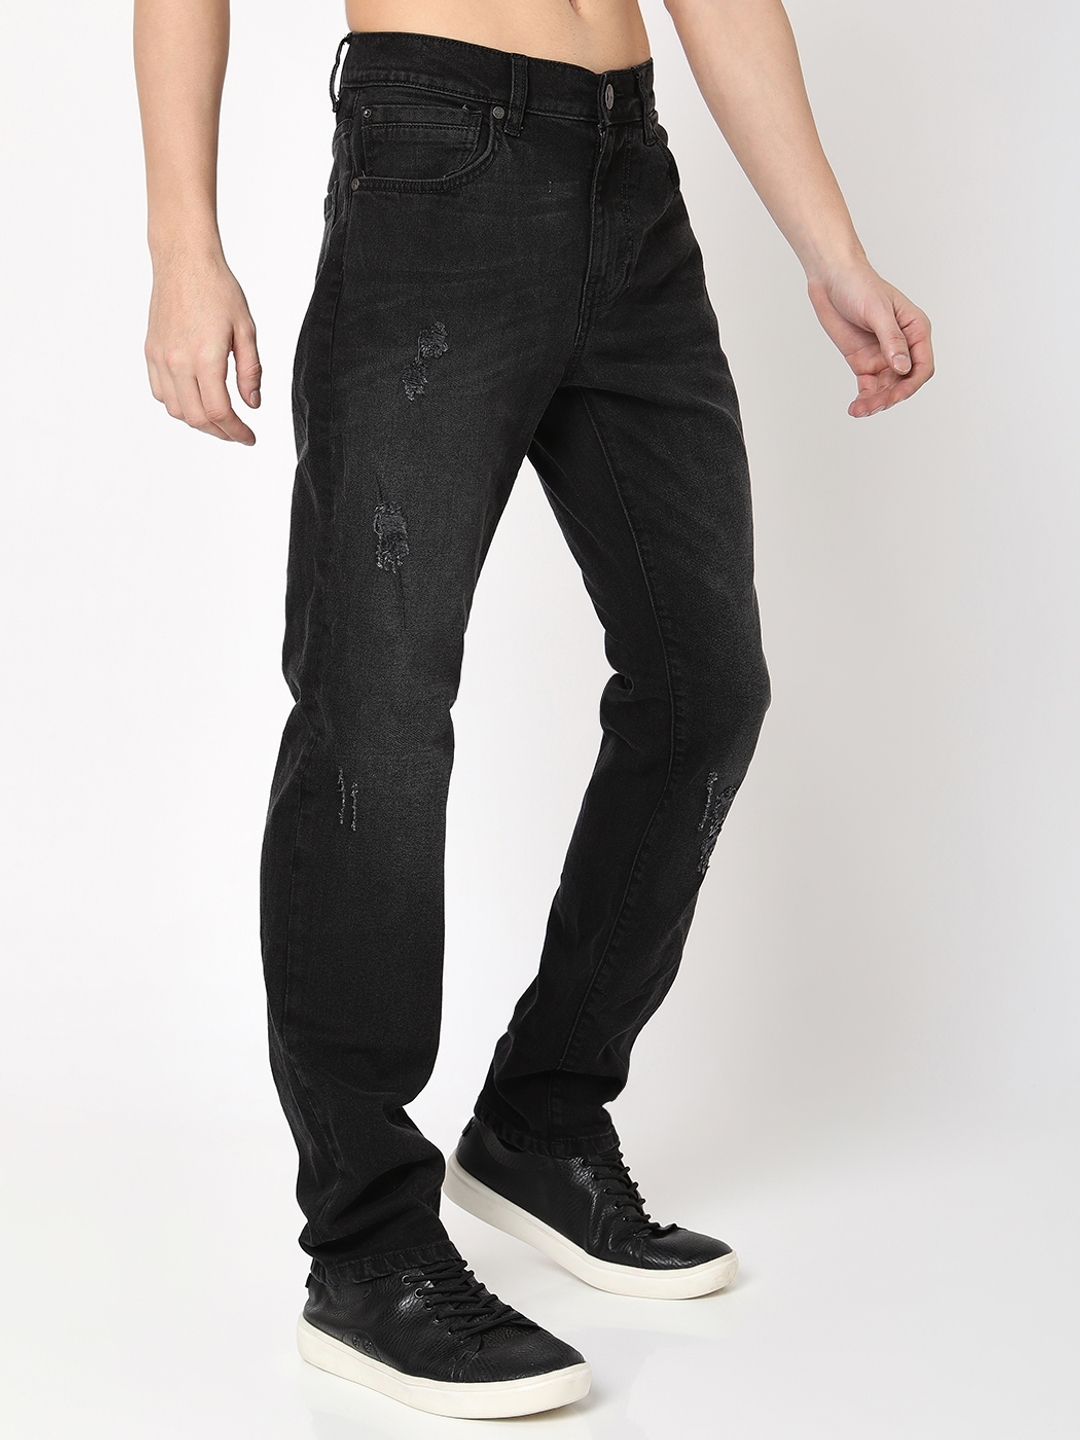 Buy Men's Slim Fit Denim Jeans Z Black Colour, Lycra Stretchable (1, 28) at  Amazon.in